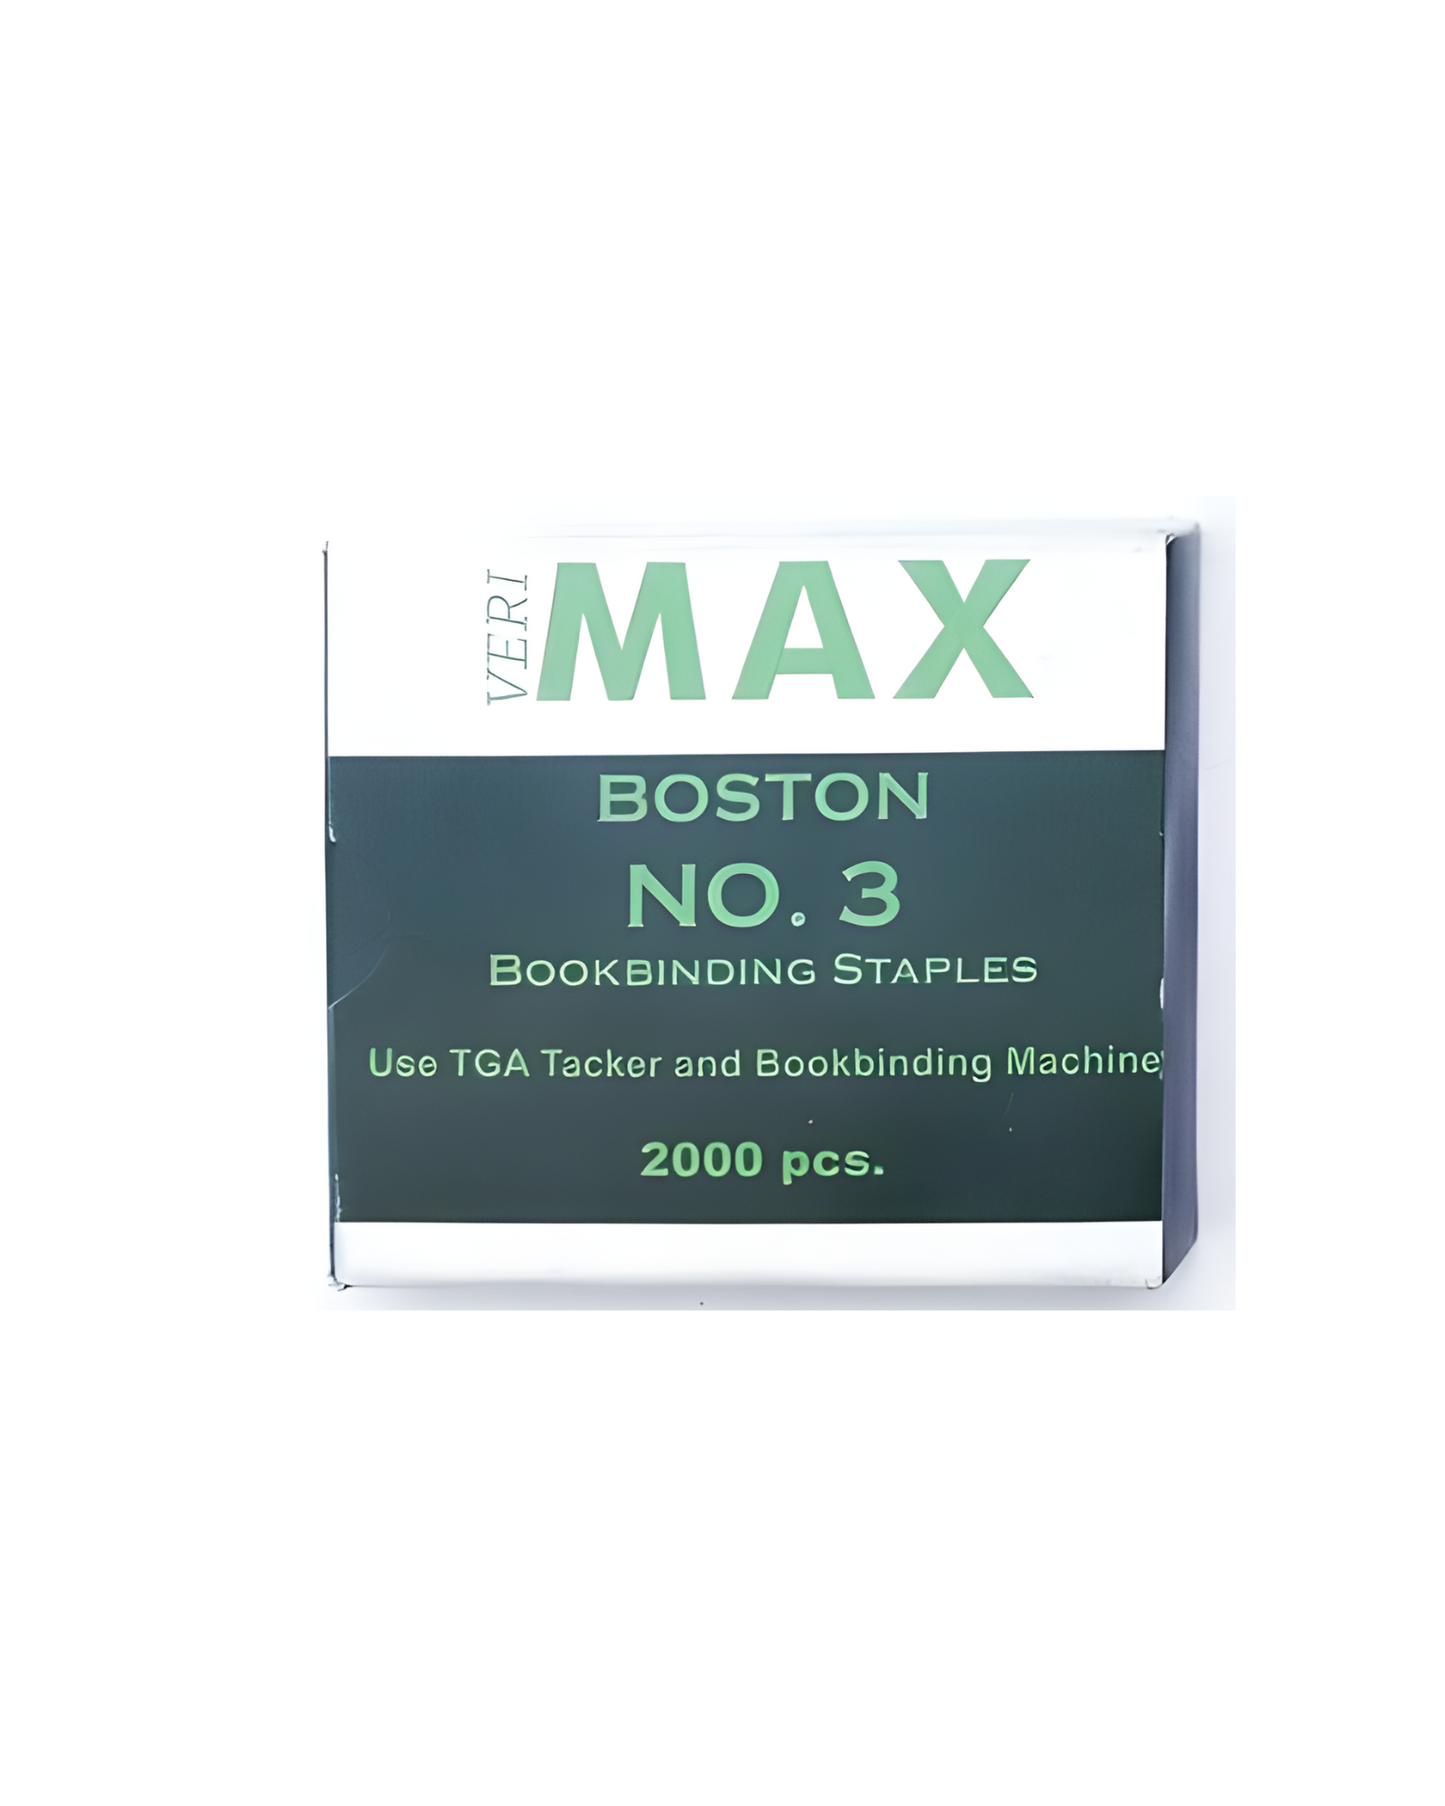 Boston Max Staple Wire HD-3LS | 10Box